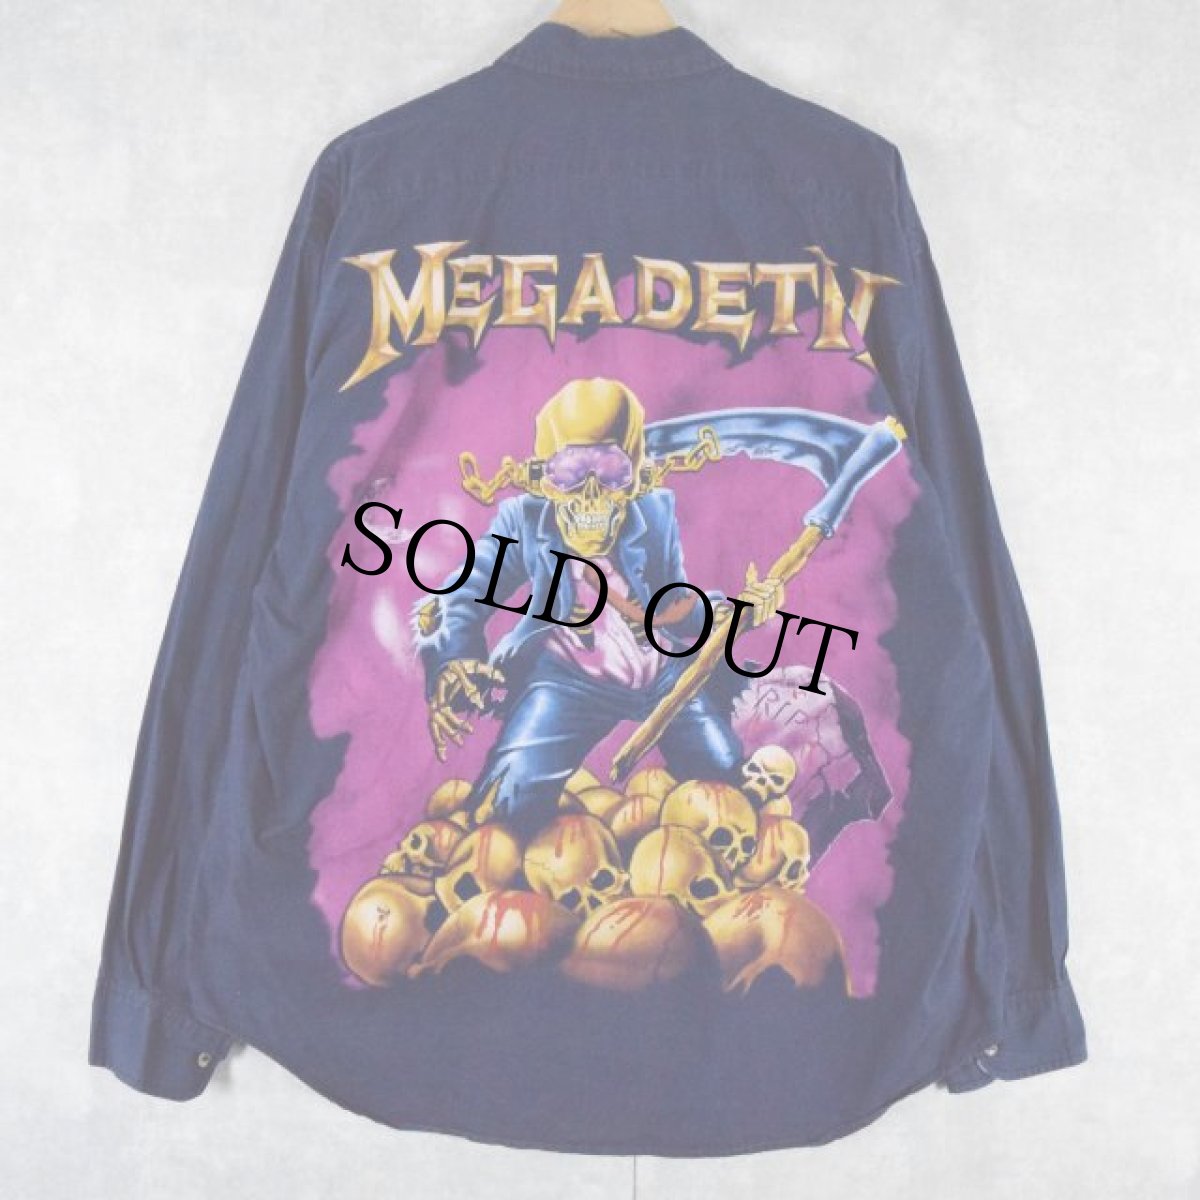 画像1: MEGADEATH ハードロックバンドプリントシャツ (1)